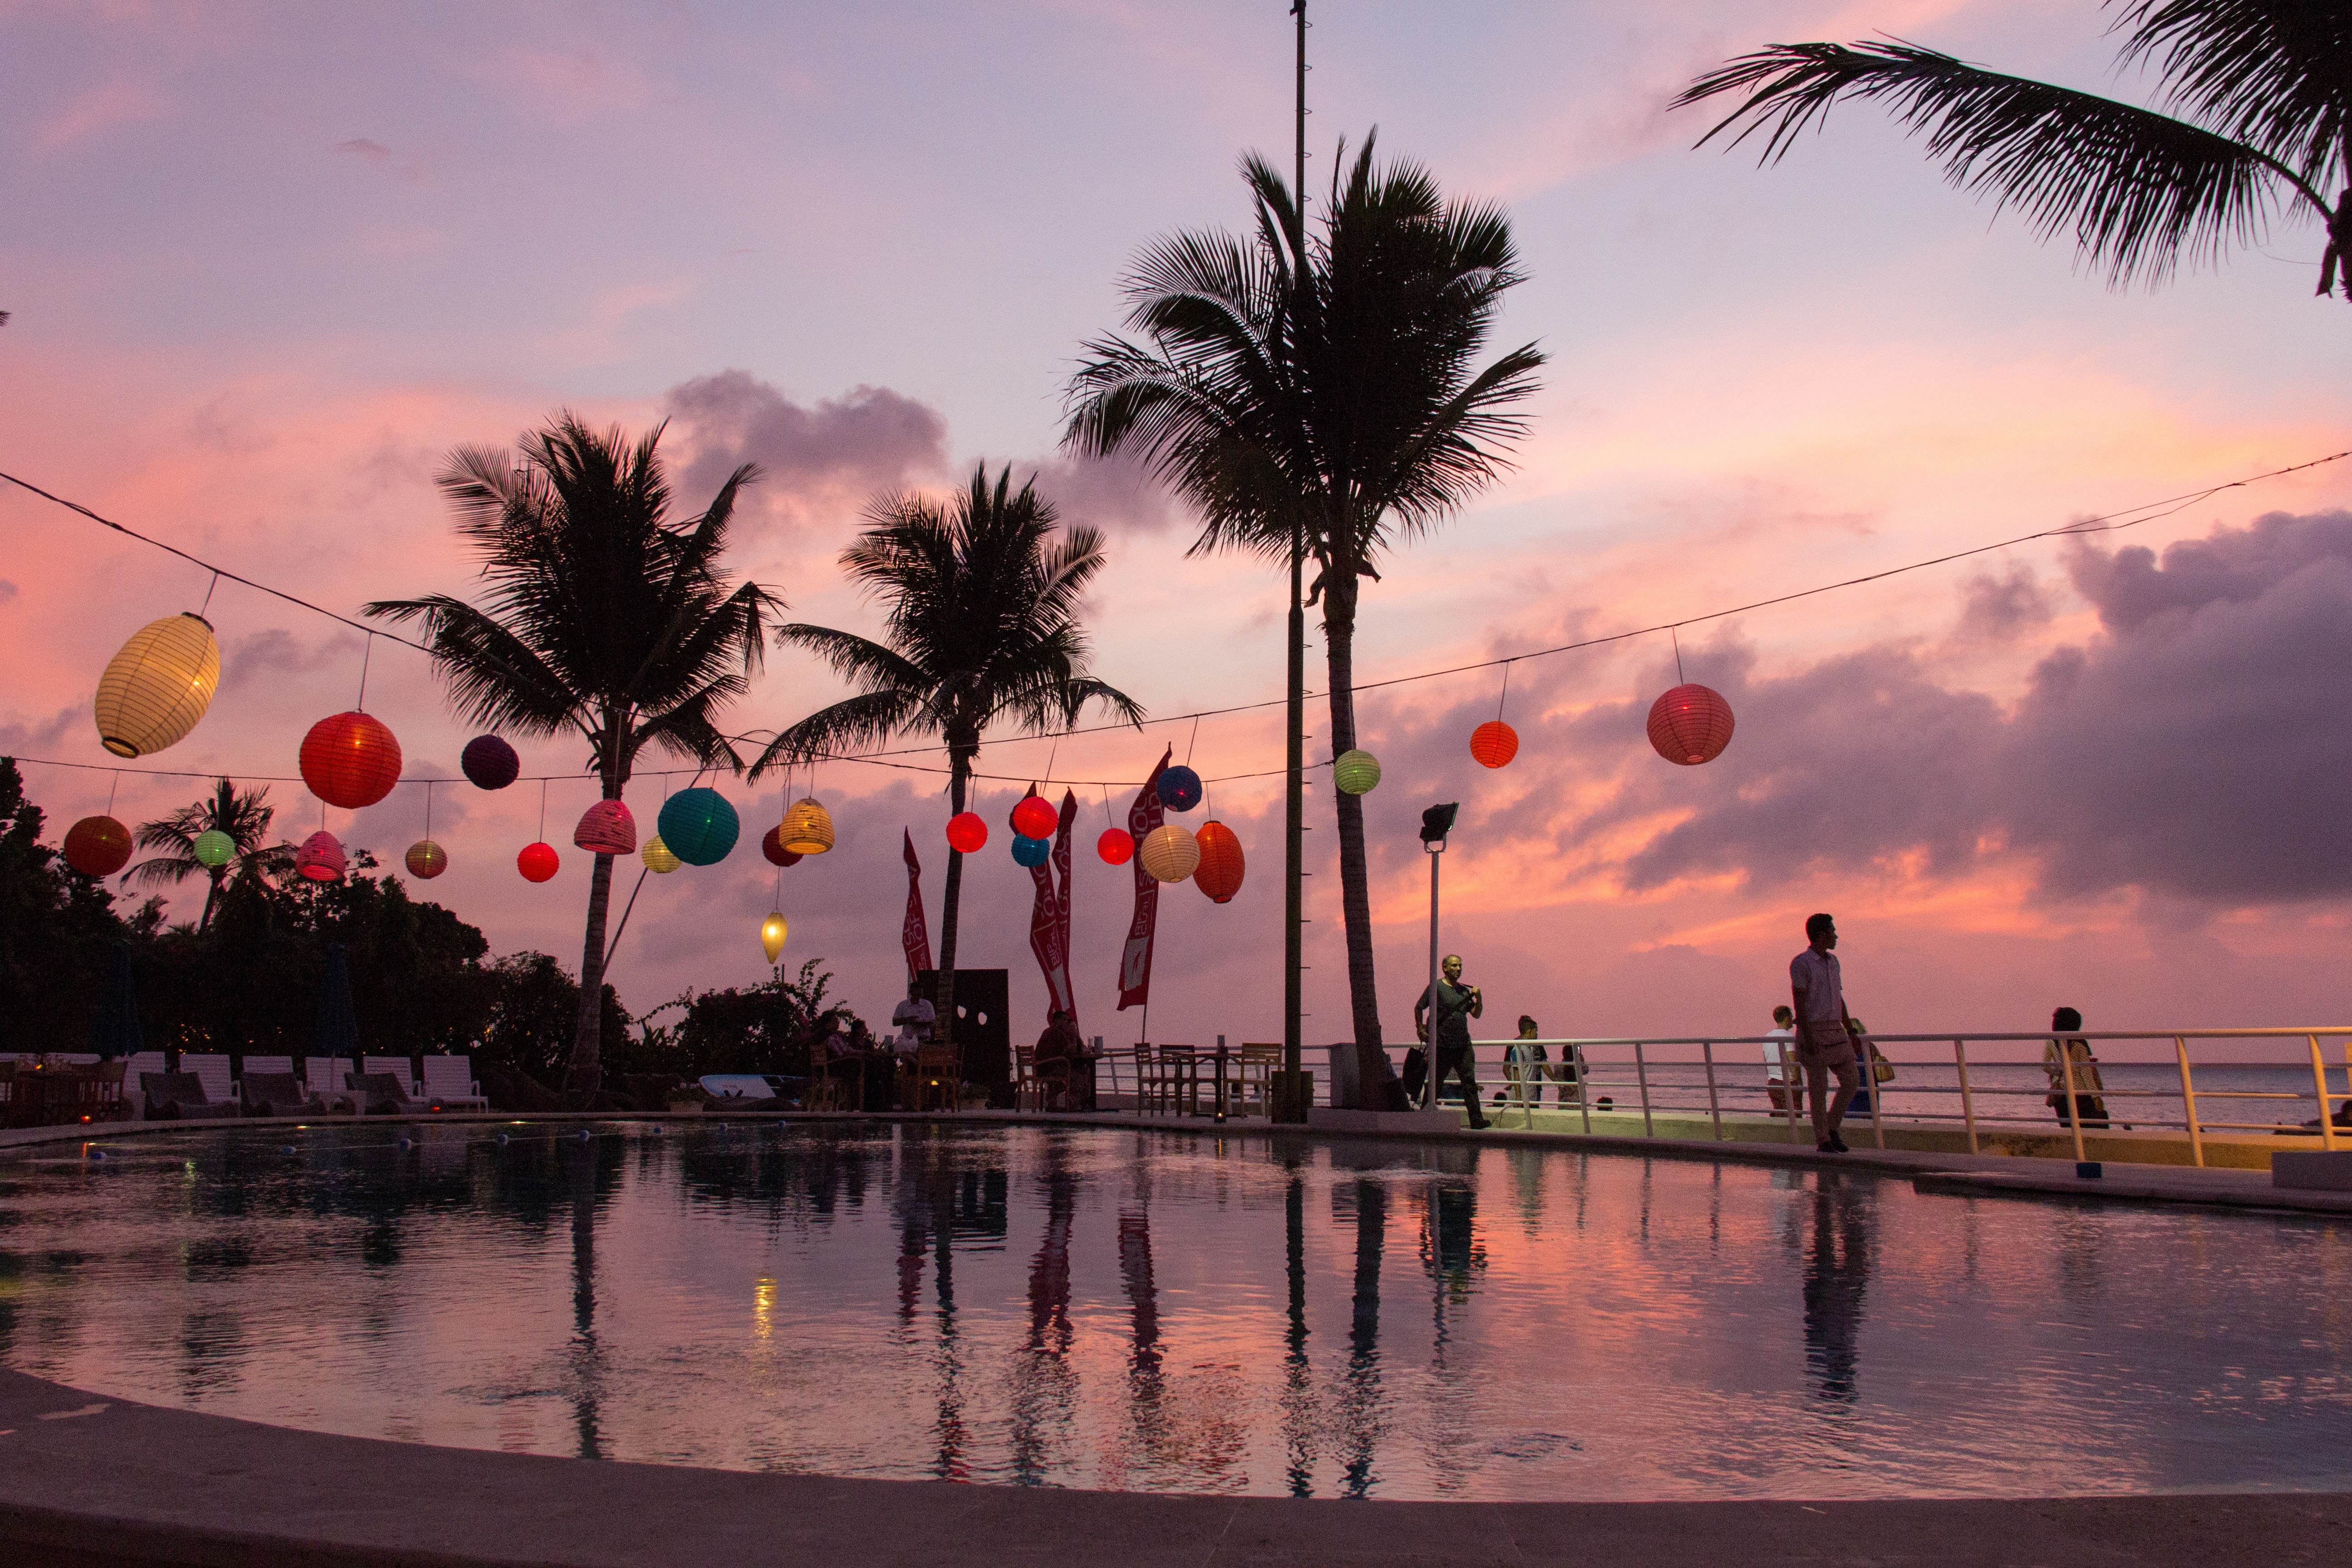 swimming pool with hanging lanterns during sunset